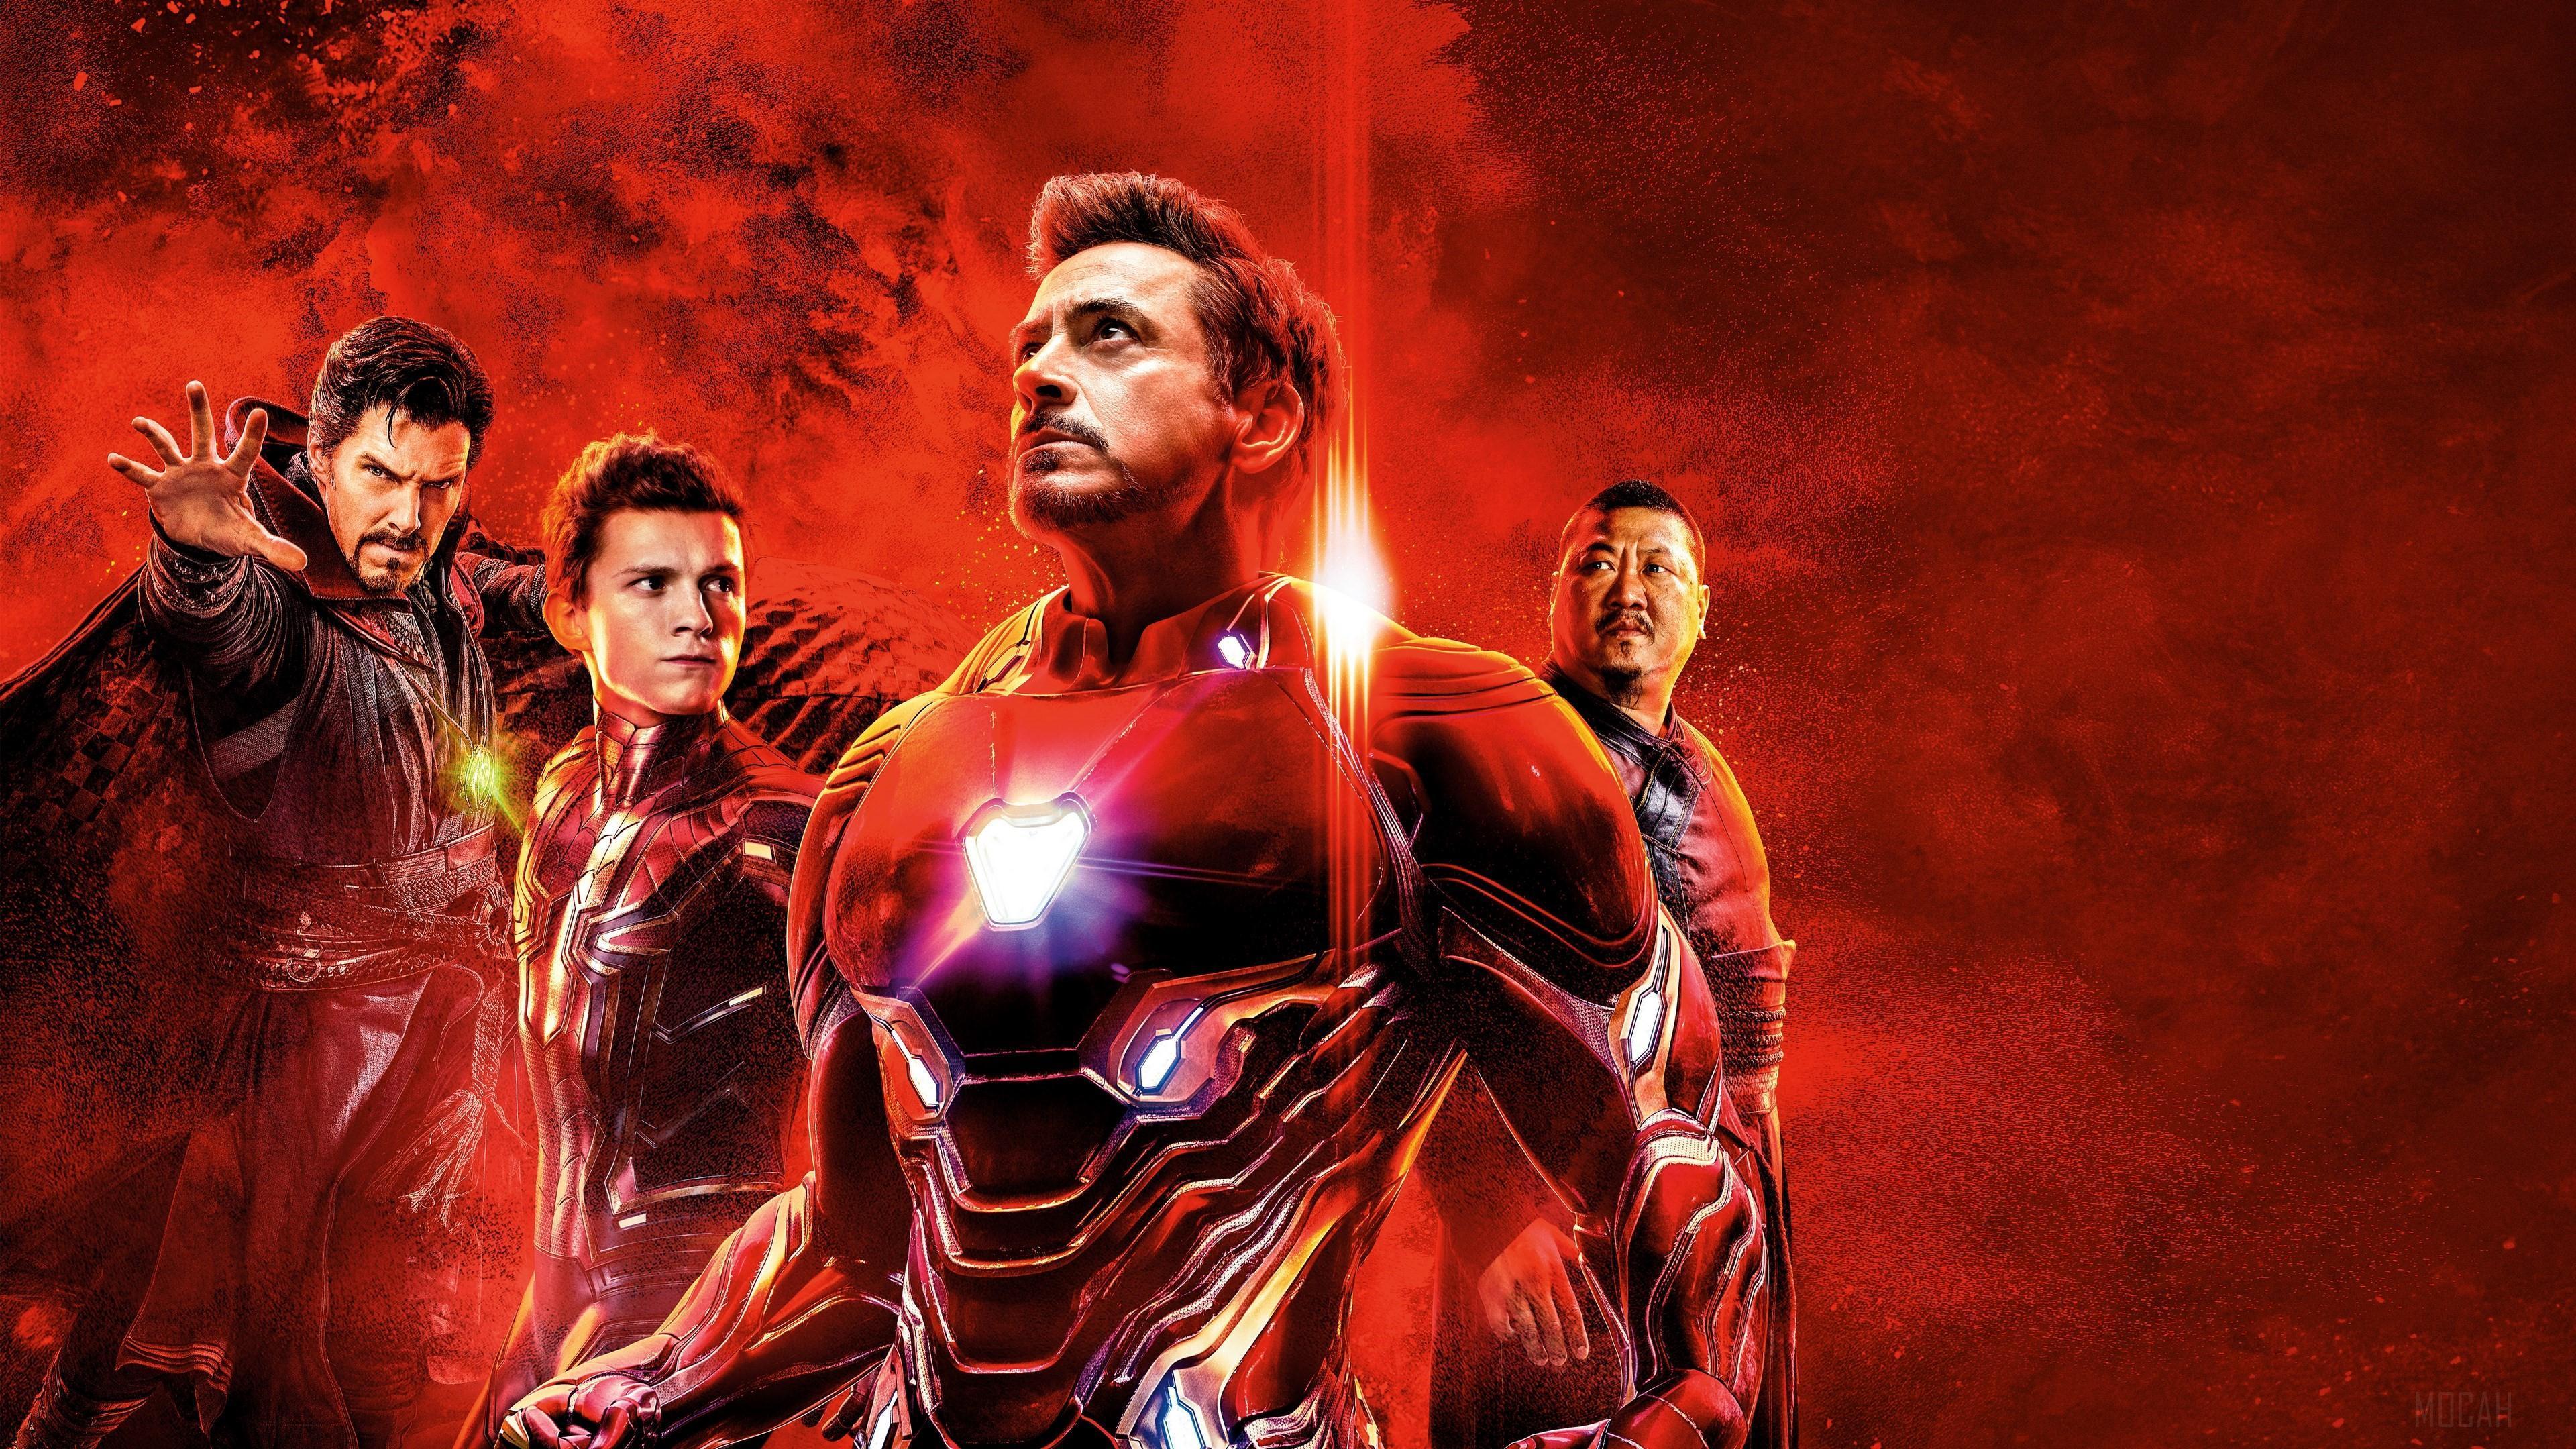 HD wallpaper, Avengers, Benedict Wong, Spider Man, Tom Holland, Robert Downey Jr, Benedict Cumberbatch